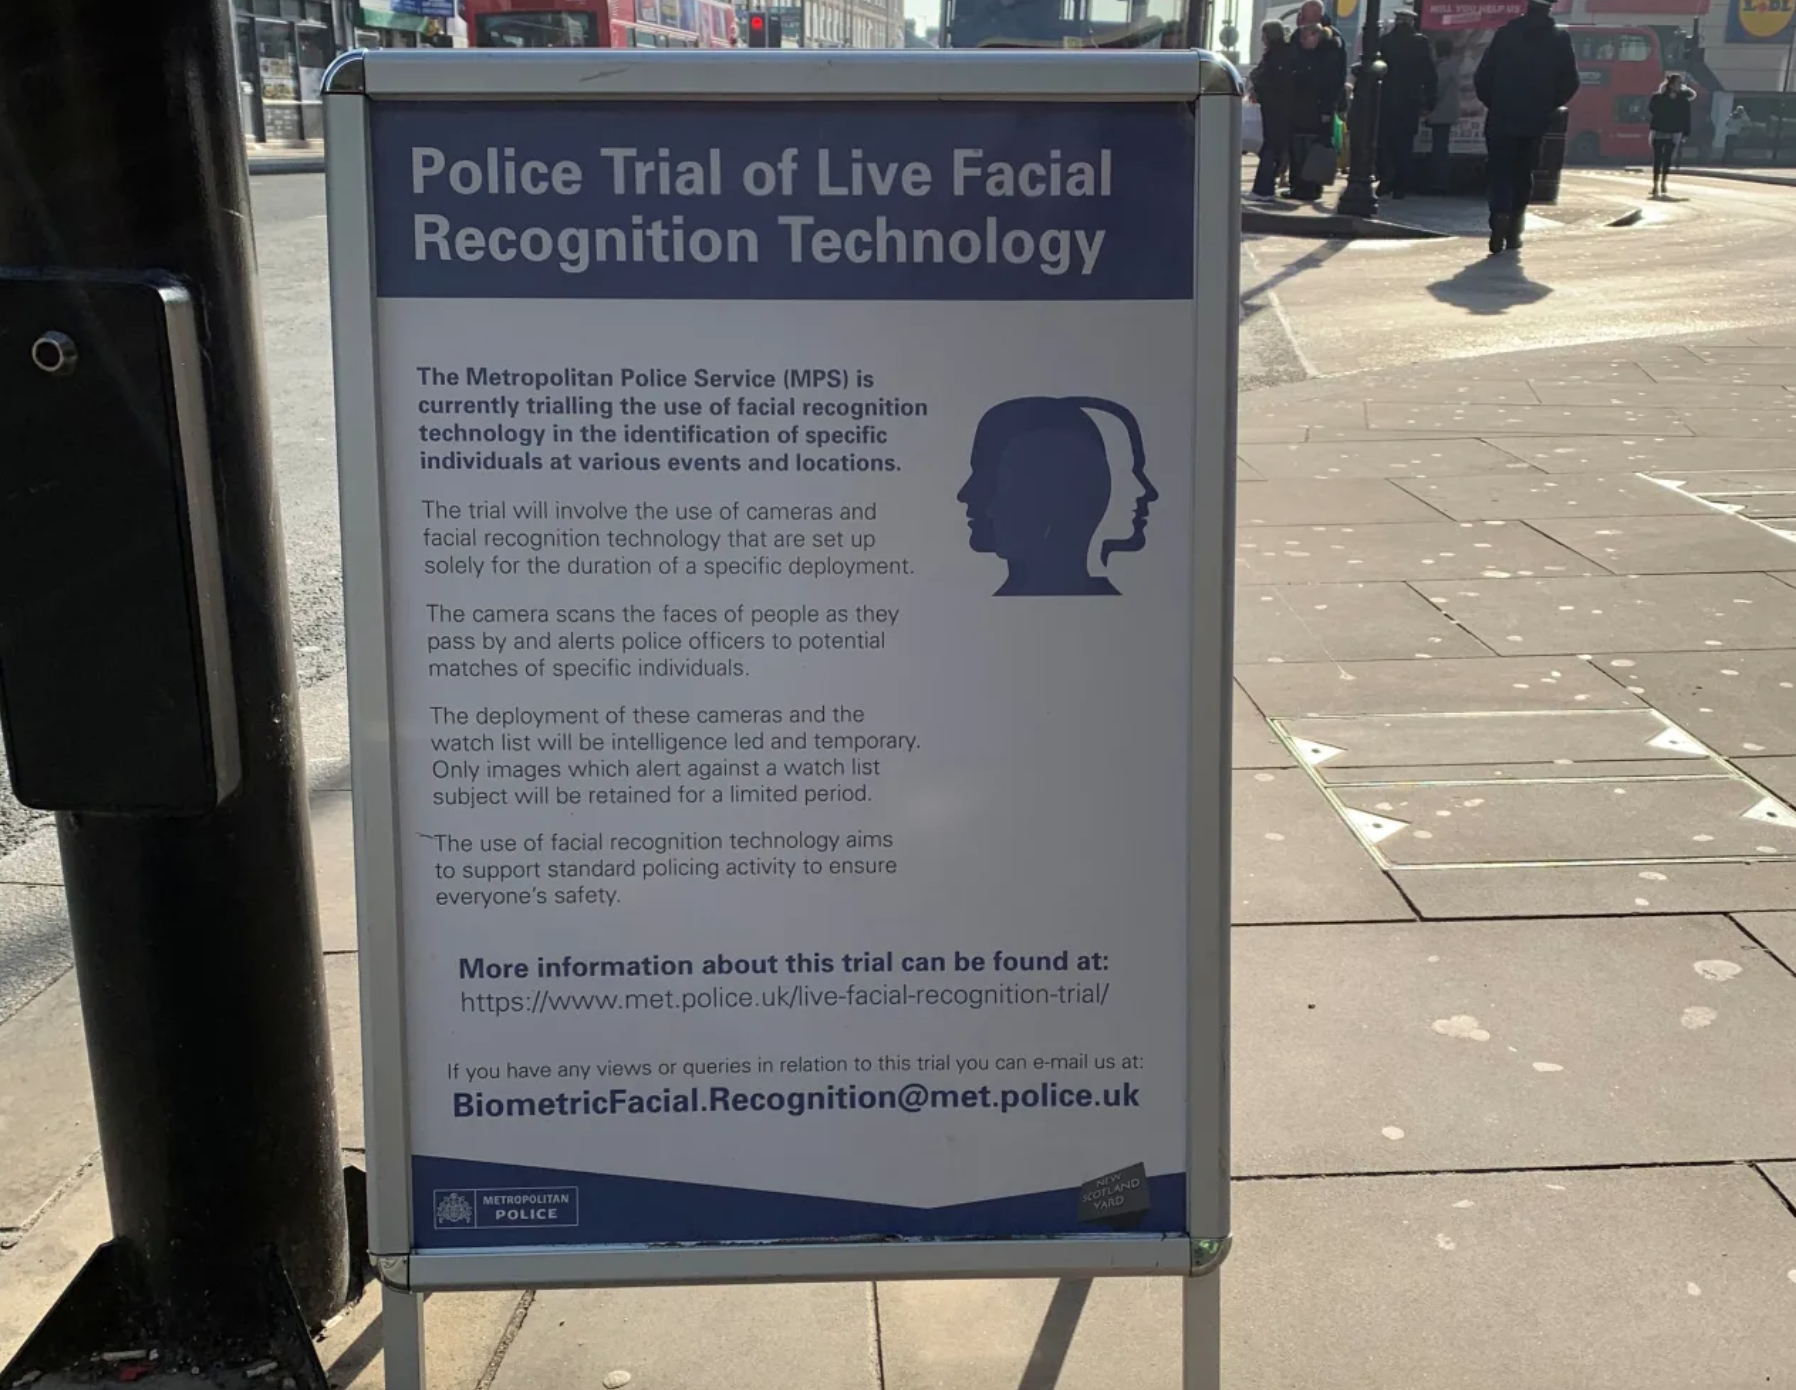 Hubieron arrestos durante período de prueba de la tecnología de reconocimiento facial en Romford